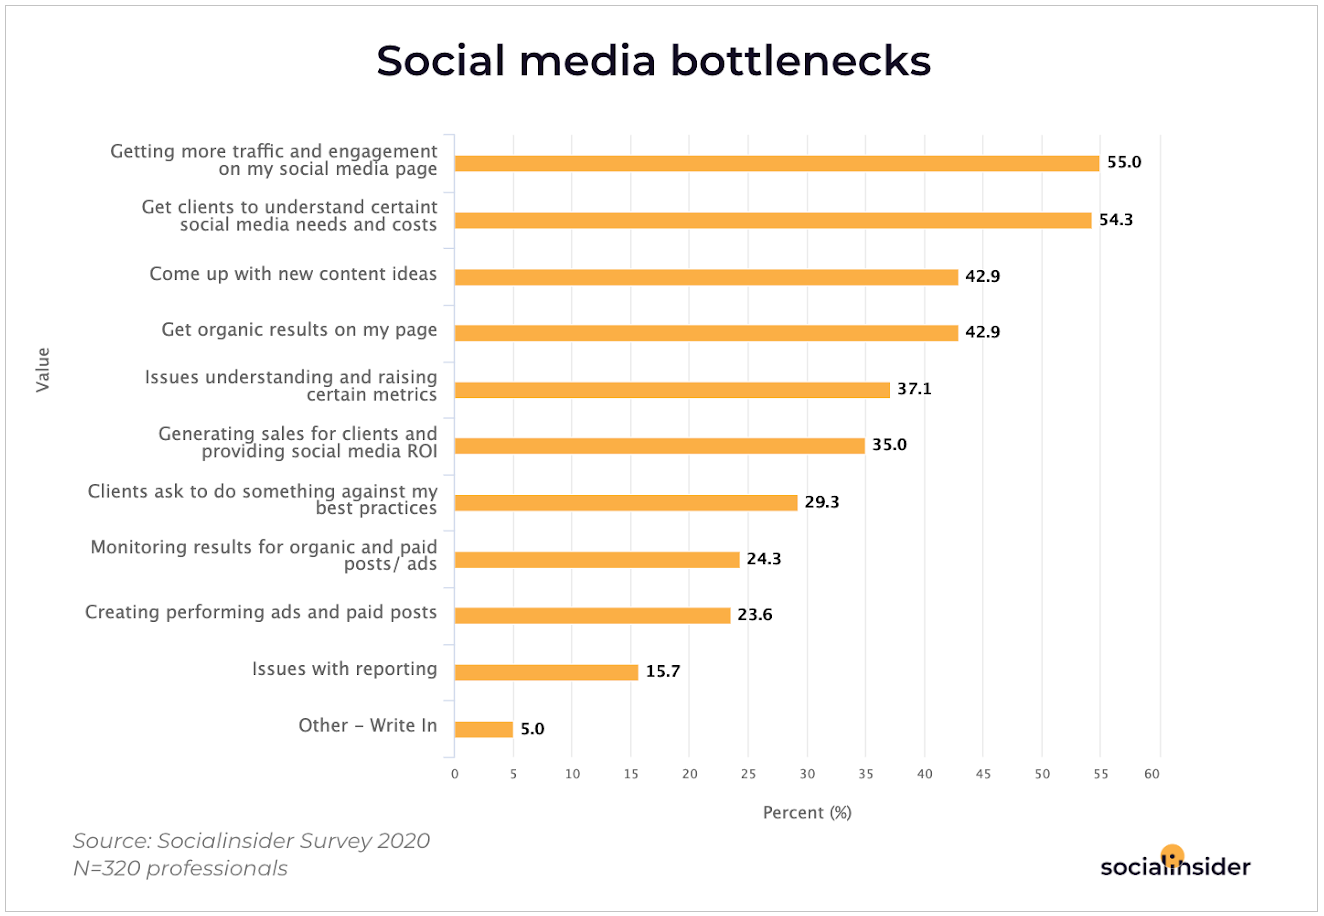 Social Media Bottlenecks to Overcome in 2020